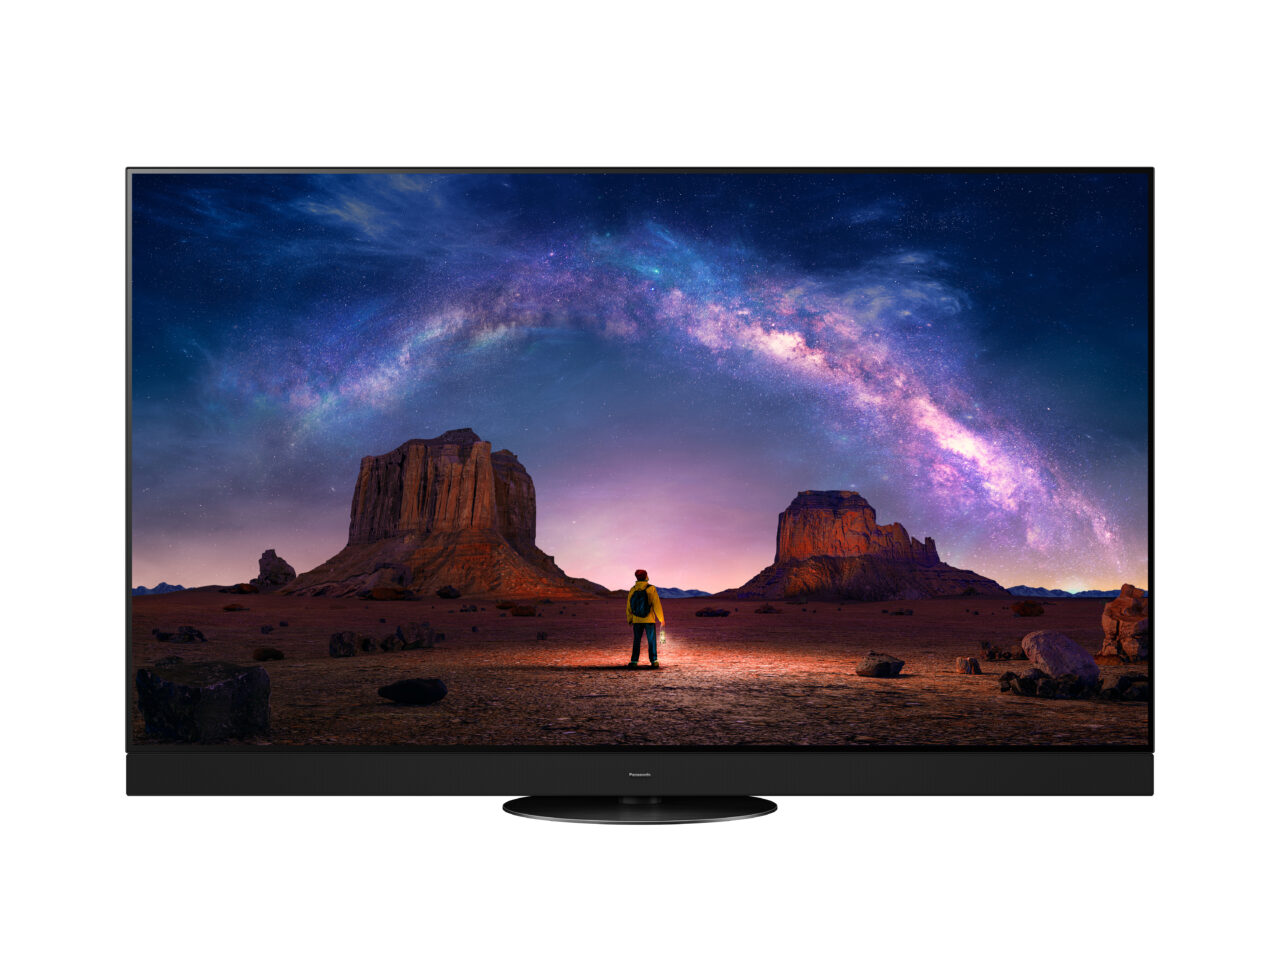 Telewizor wyświetlający obraz pustyni z formacjami skalnymi w nocy pod rozgwieżdżonym niebem z widoczną Drogą Mleczną oraz sylwetką człowieka.